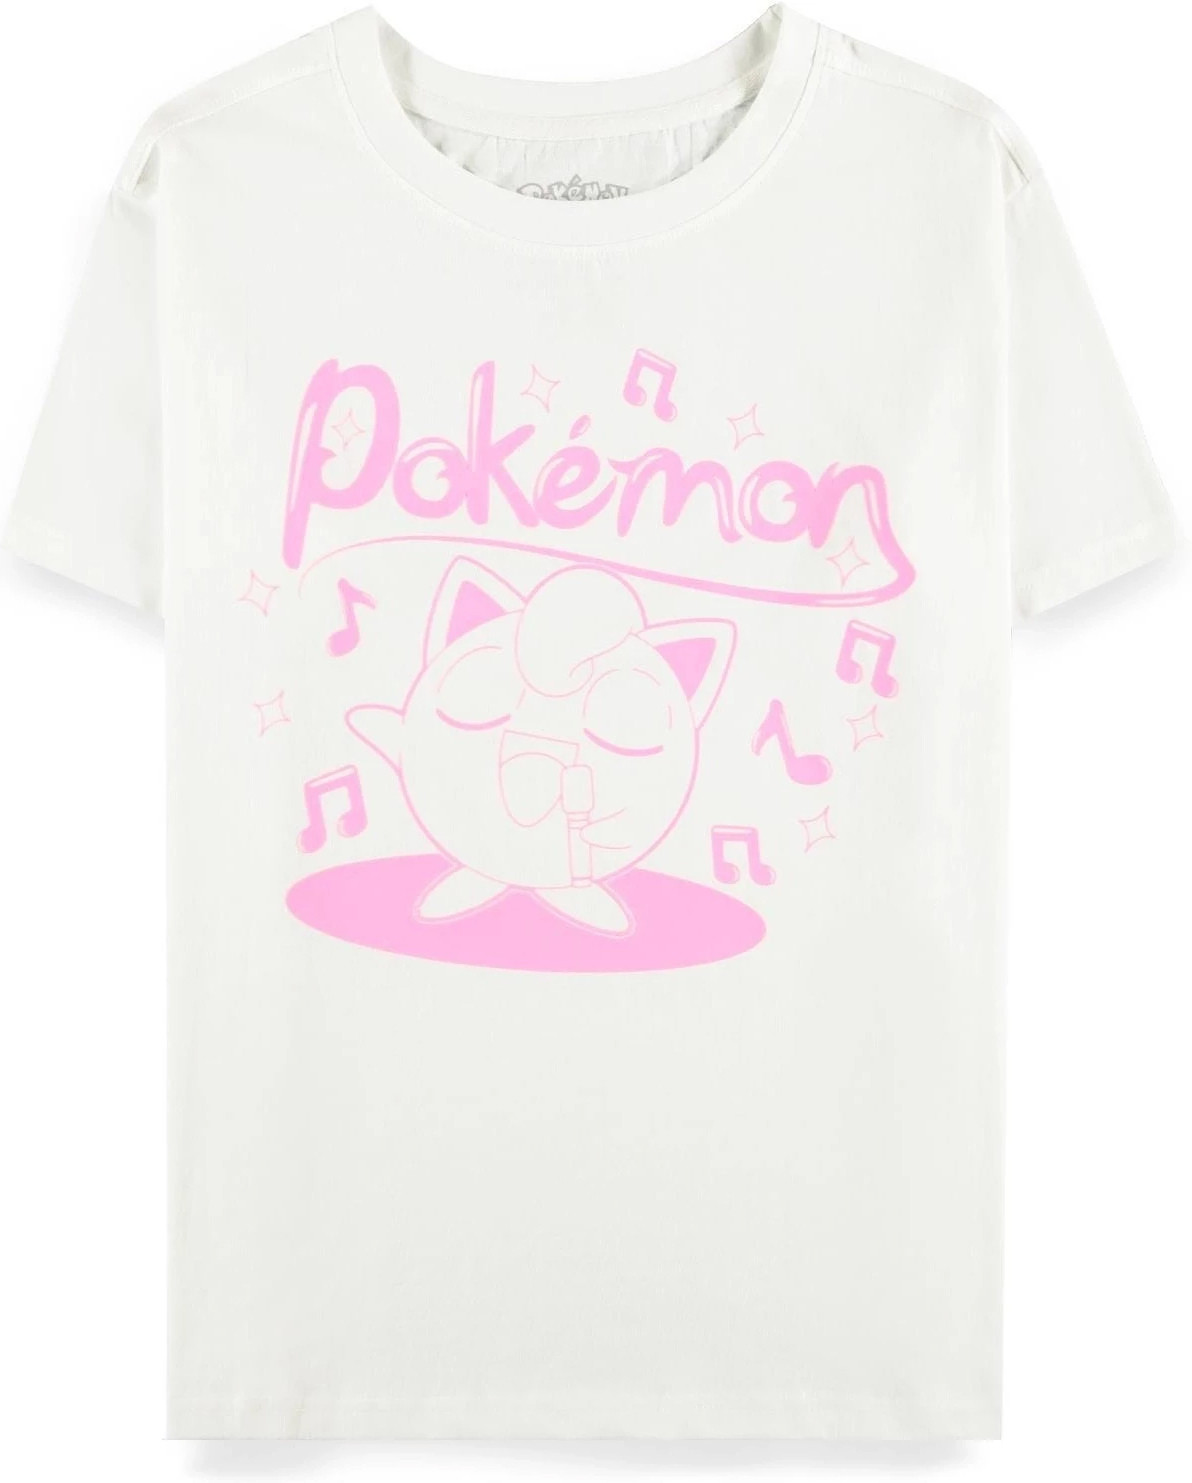 Pokémon - Jigglypuff Sing - Women's Short Sleeved T-shirt